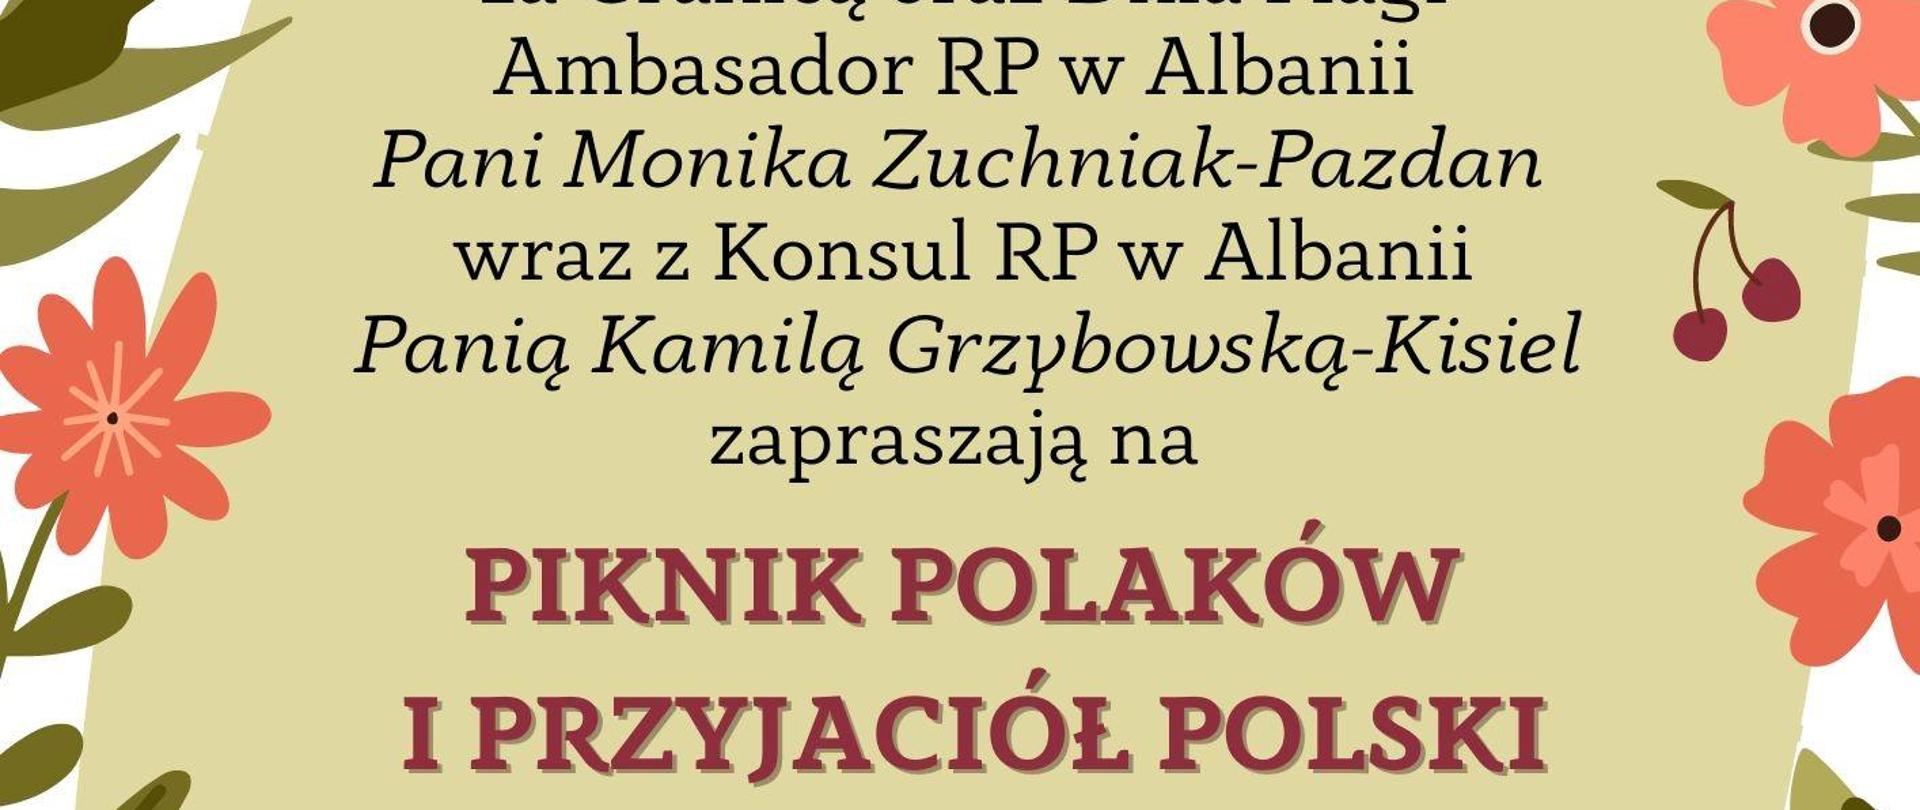 Polaków i Przyjaciół Polski